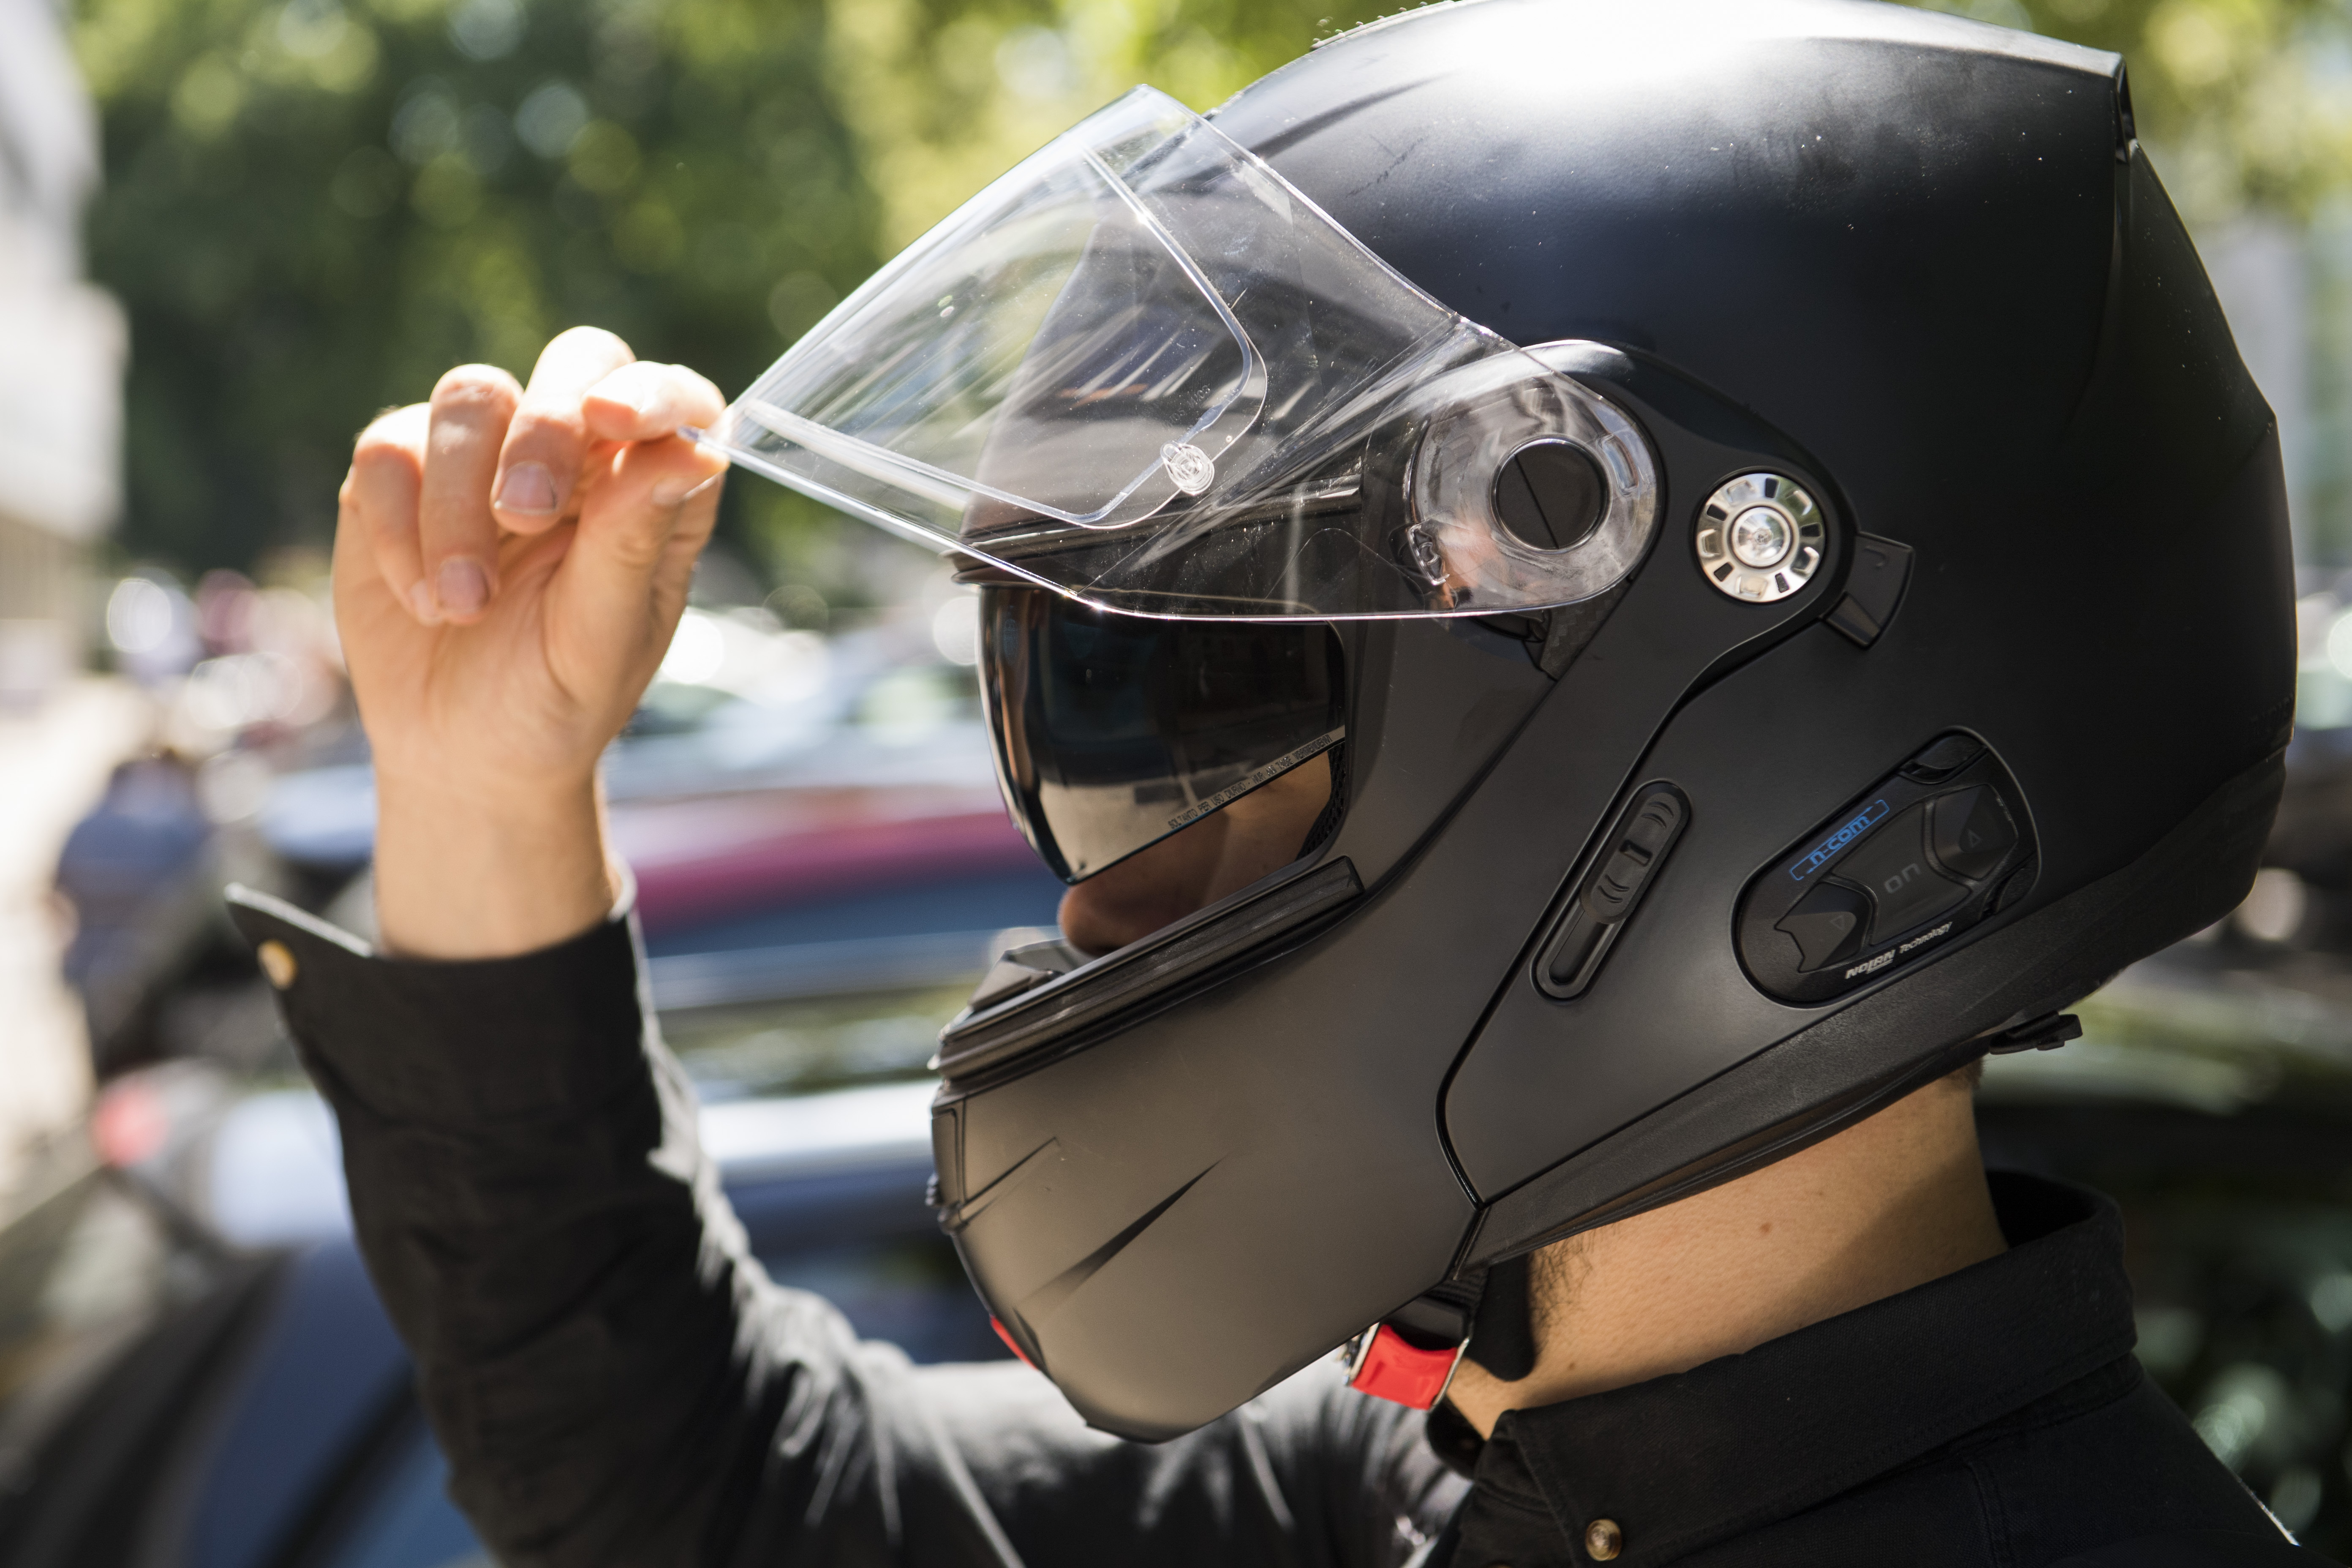 Cascos abiertos para moto: ¿es seguro usarlos? Conoce los detalles